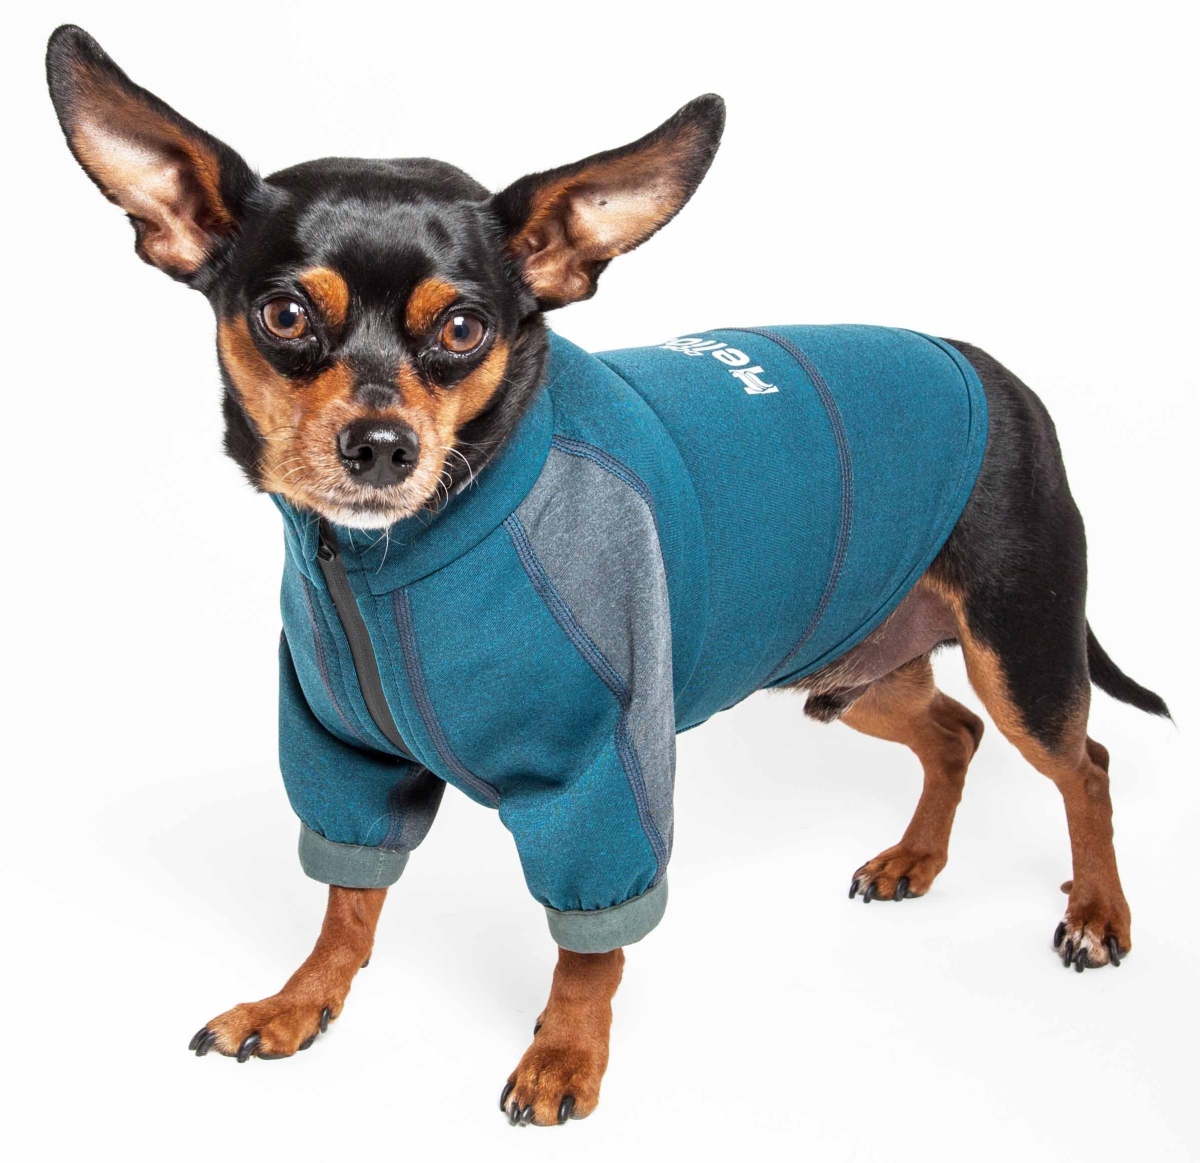 Tshl6blxs Eboneflow Mediumweight 4-way-stretch Flexible & Breathable Performance Dog Yoga T-shirt, Ocean Blue & Grey - Extra Small